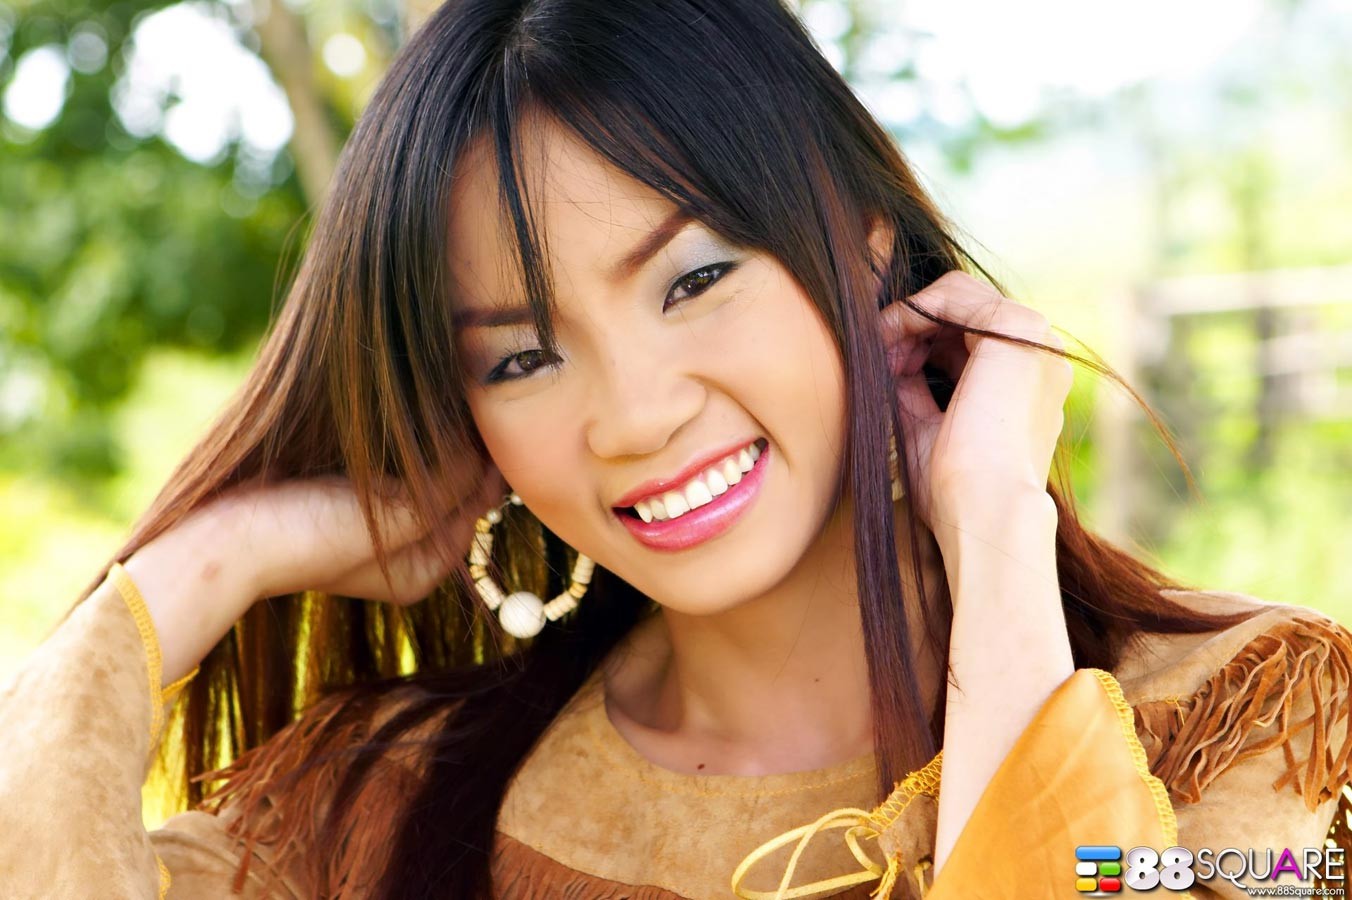 Christina yho zeigt ihre schöne Muschi
 #69797958